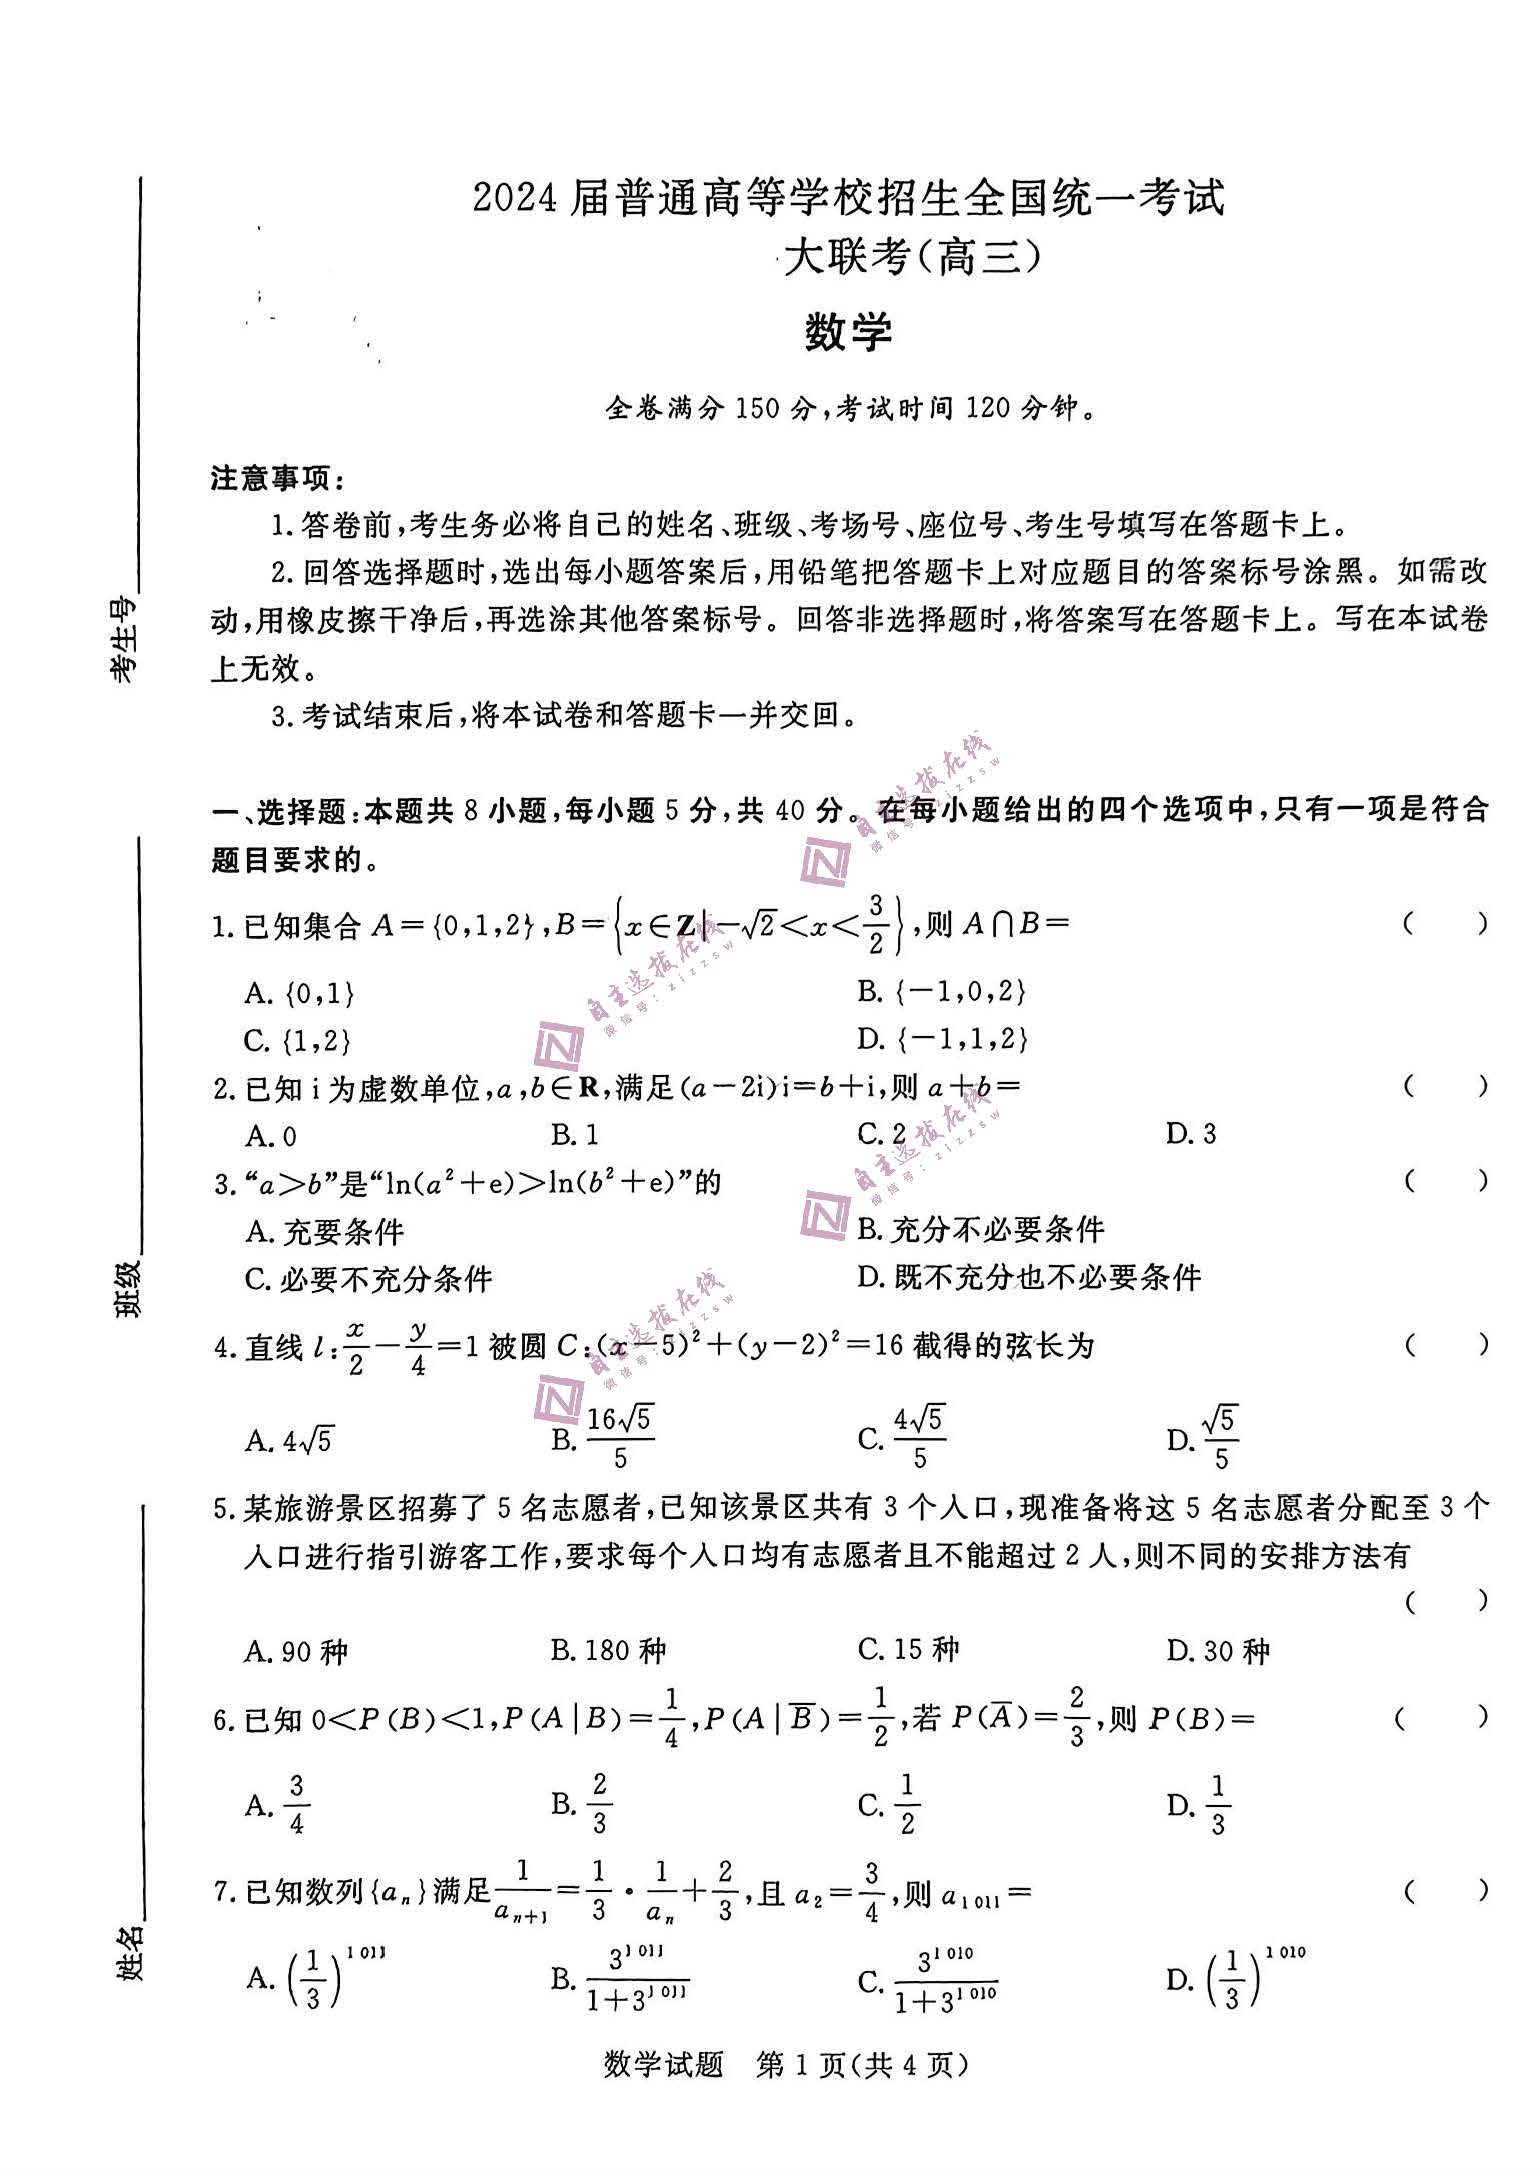 青桐鸣2024年高三5月大联考试数学试题